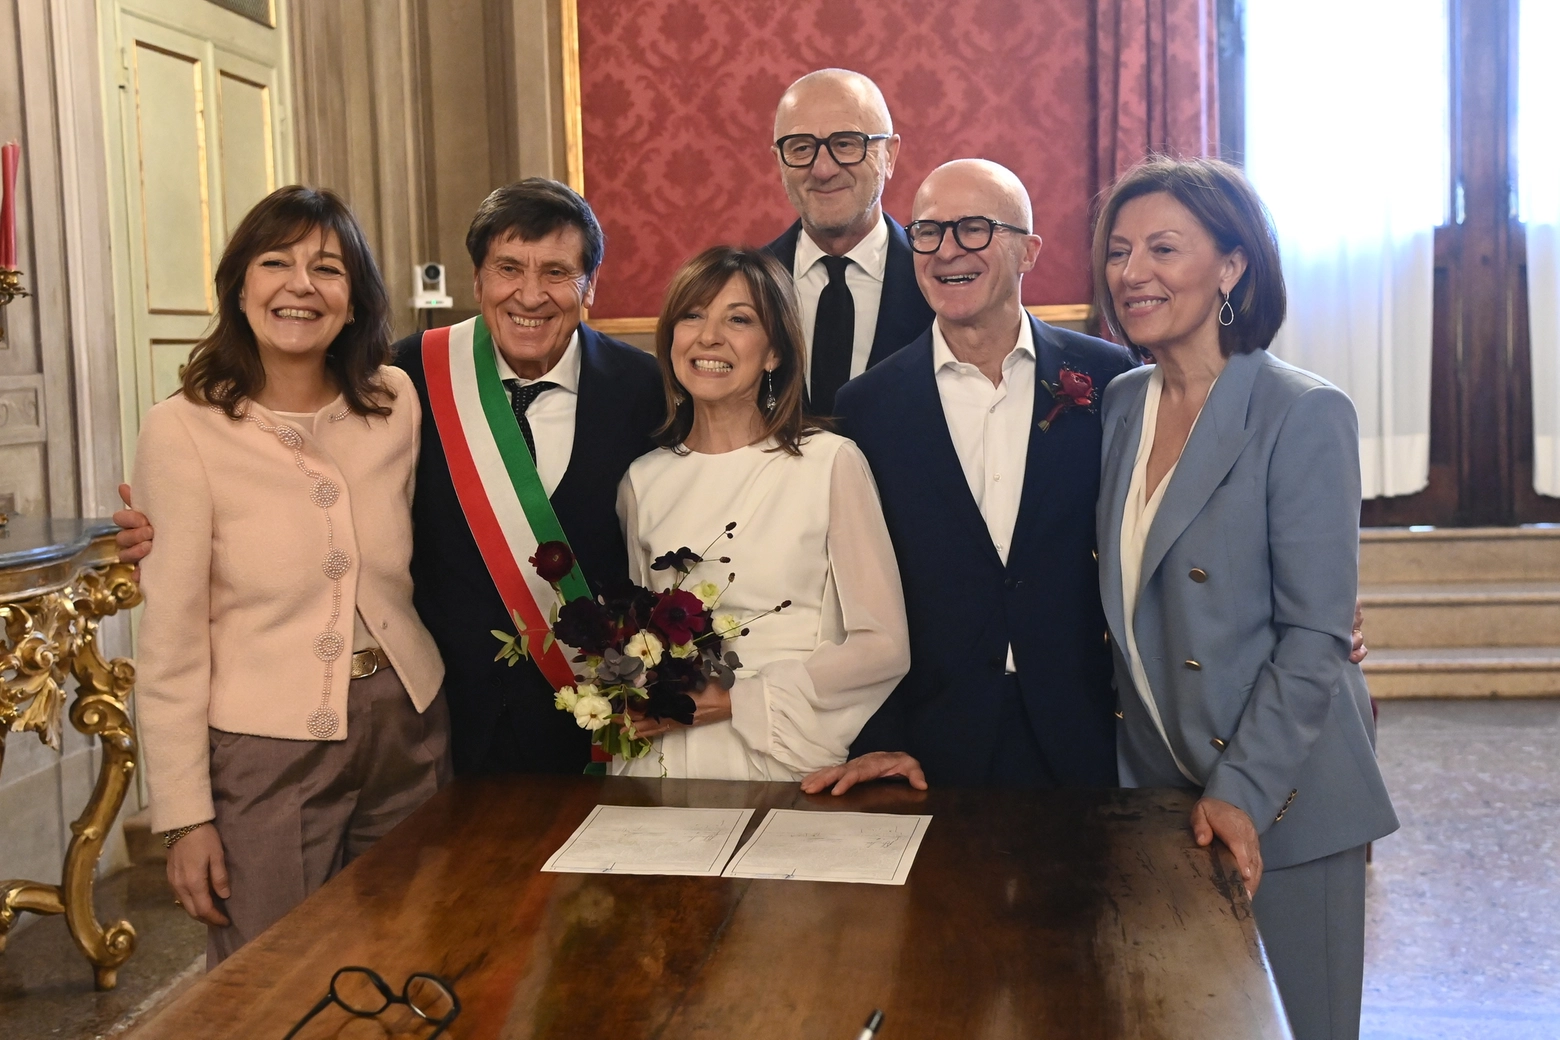 Nozze speciali per Stefano e Marina: Gianni Morandi celebra il matrimonio dei suoi amici in Comune